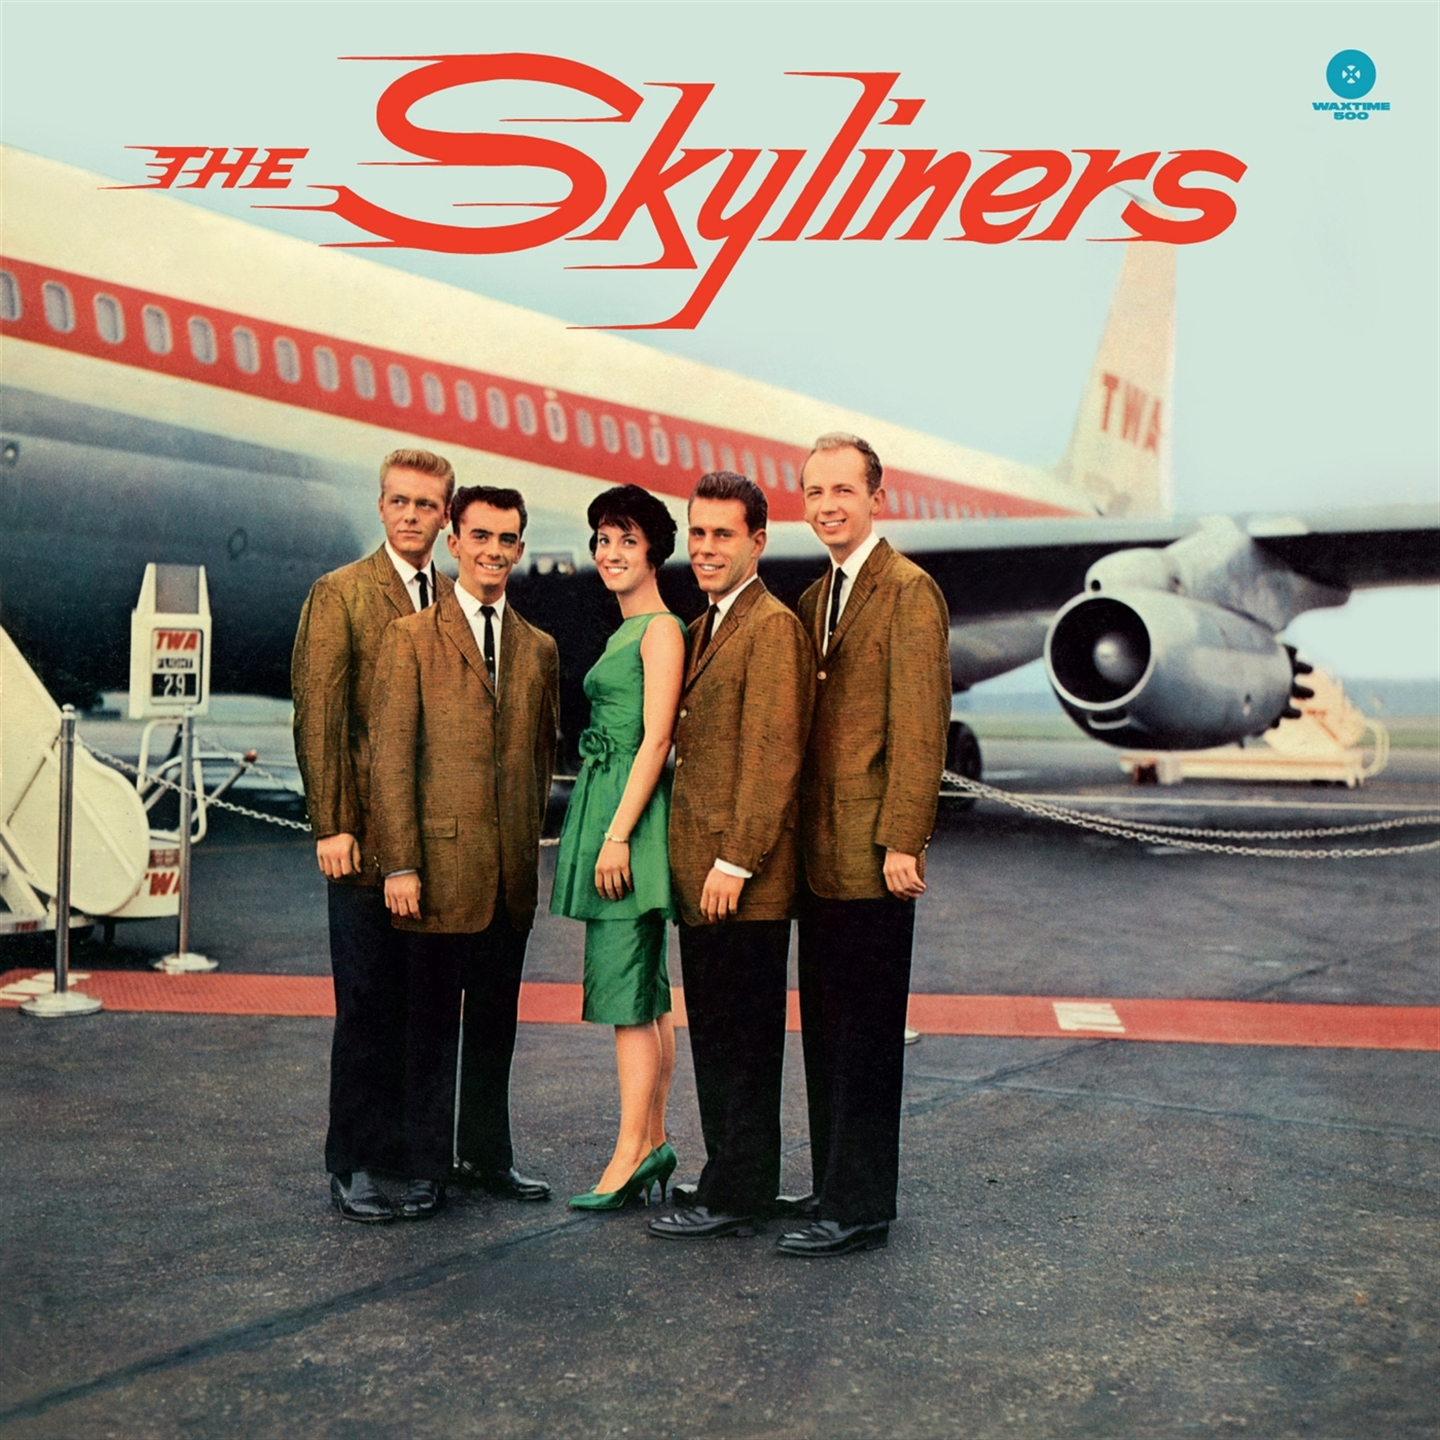 THE SKYLYNERS (+ 2 BONUS TRACKS) [LP LTD ED]